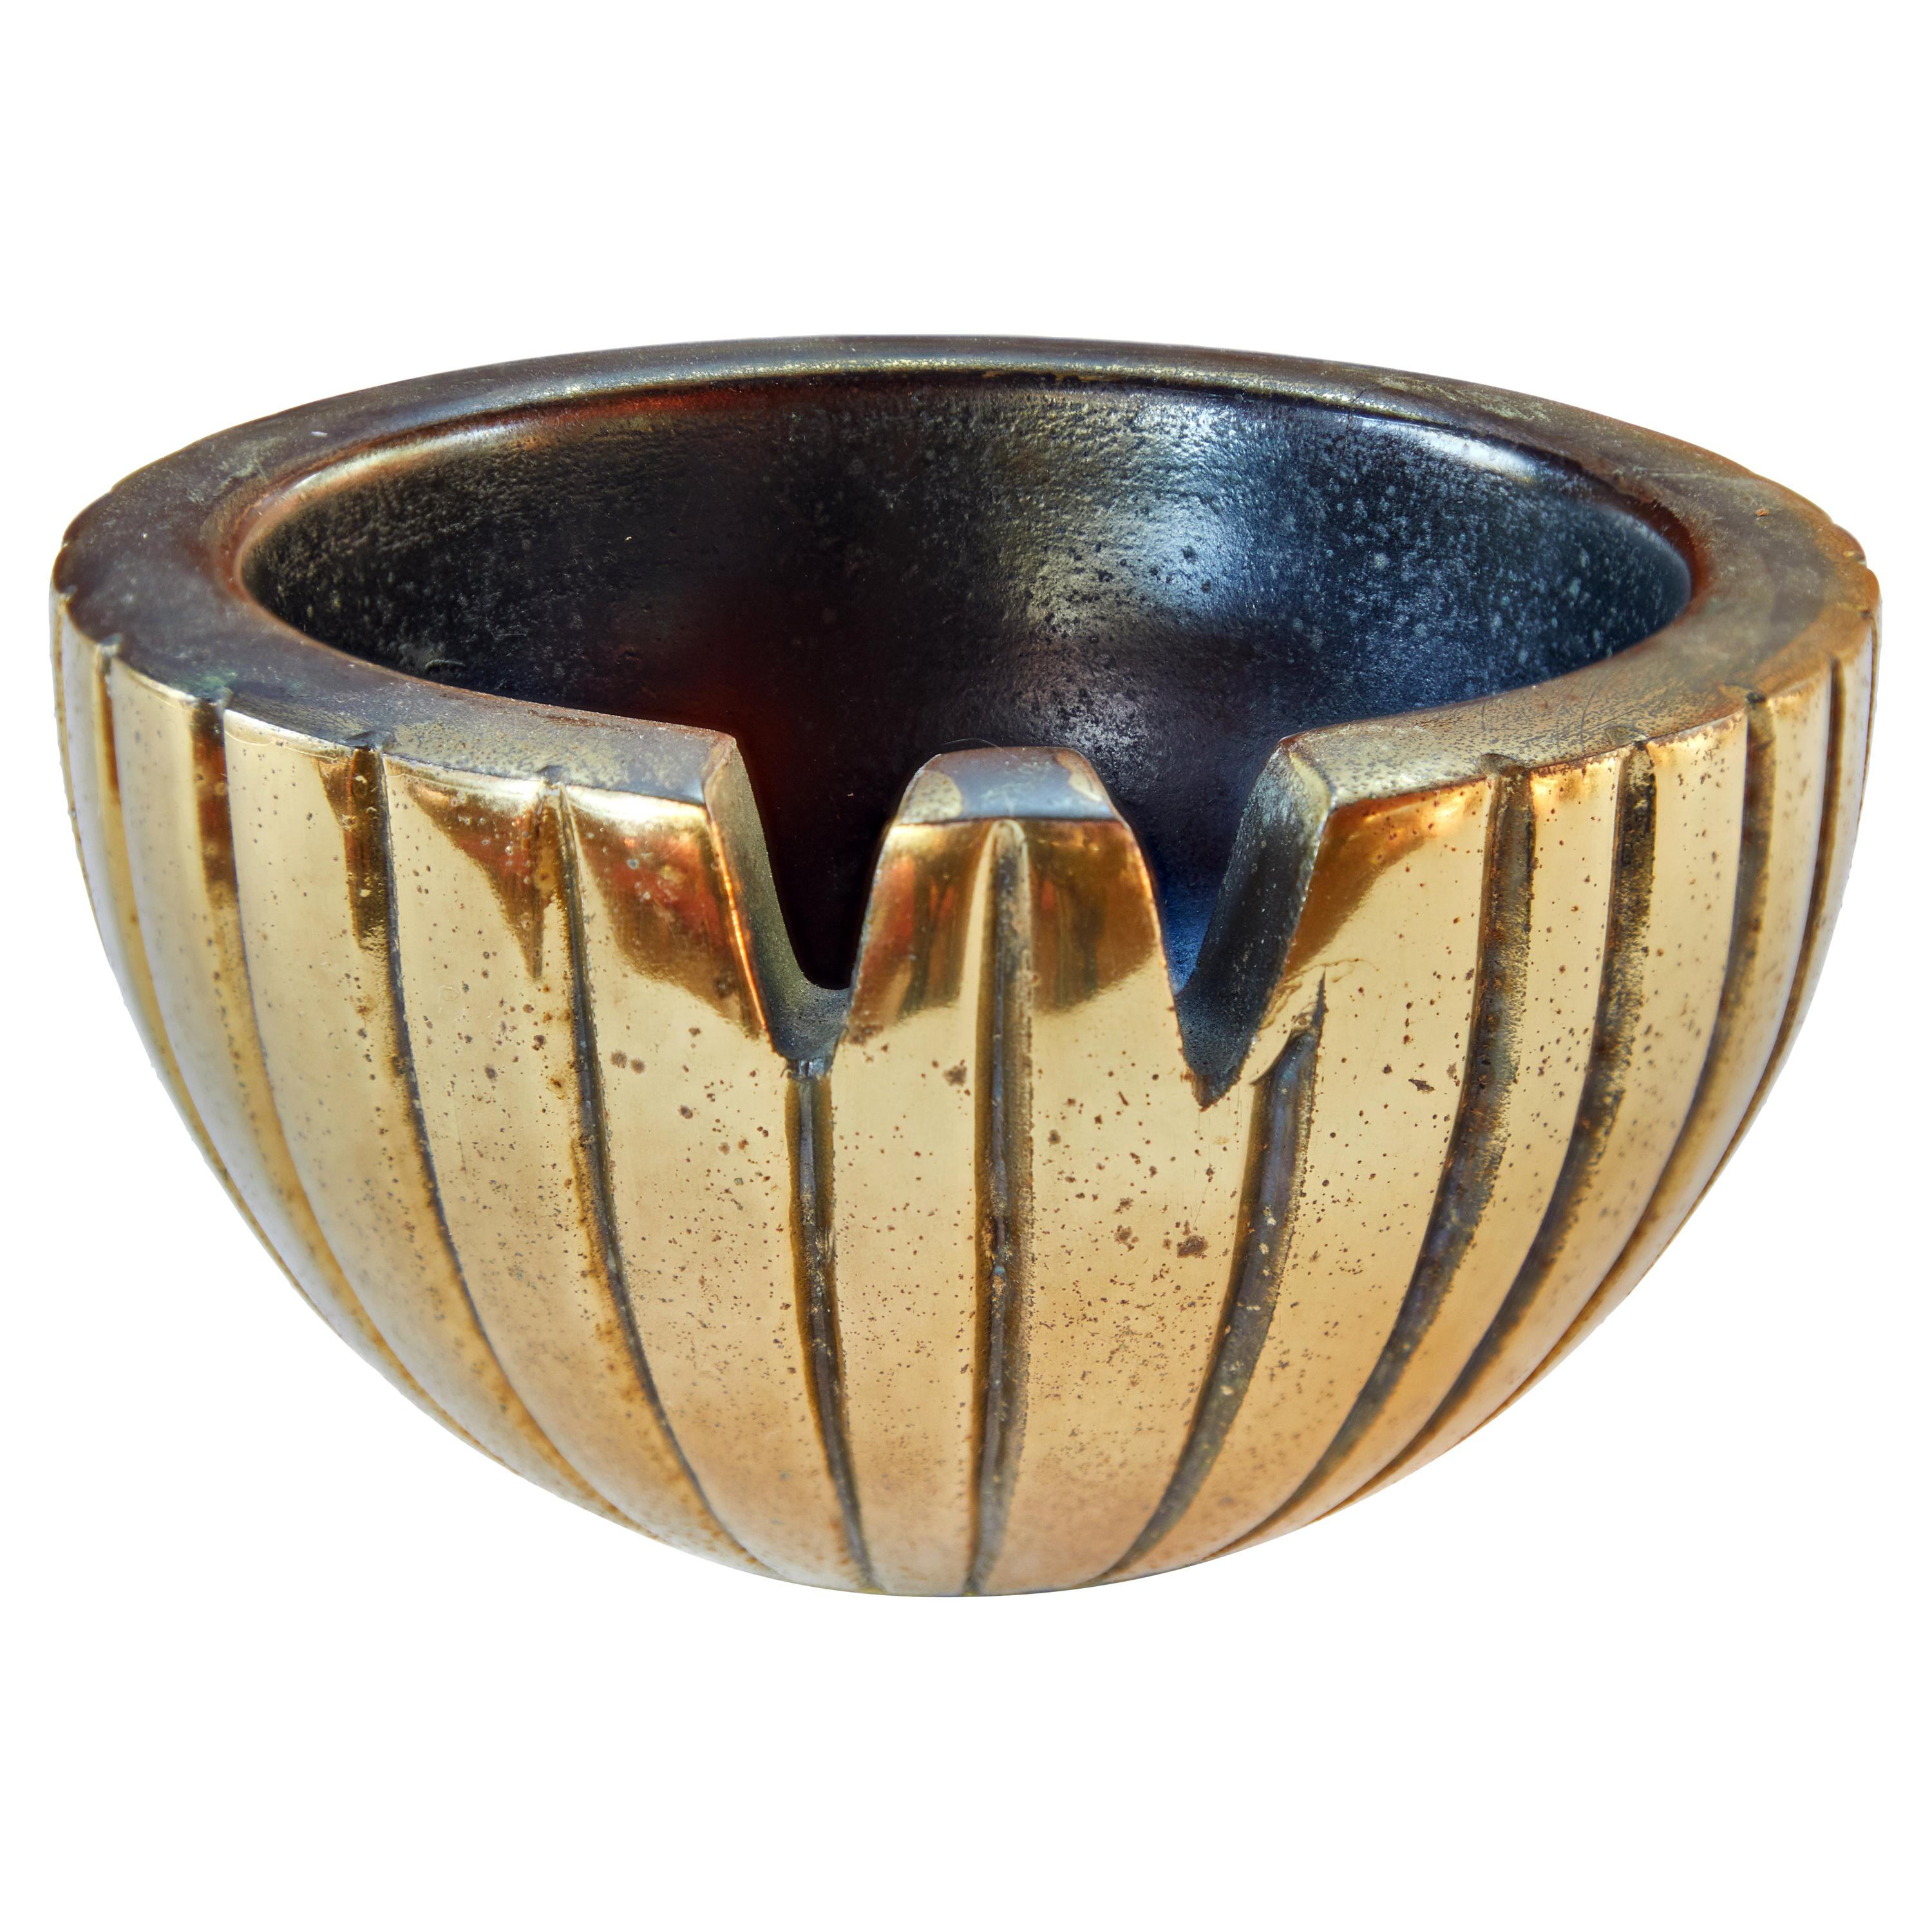 1950s Ben Seibel Brass Bowl or Ashtray for Jenfred-Ware